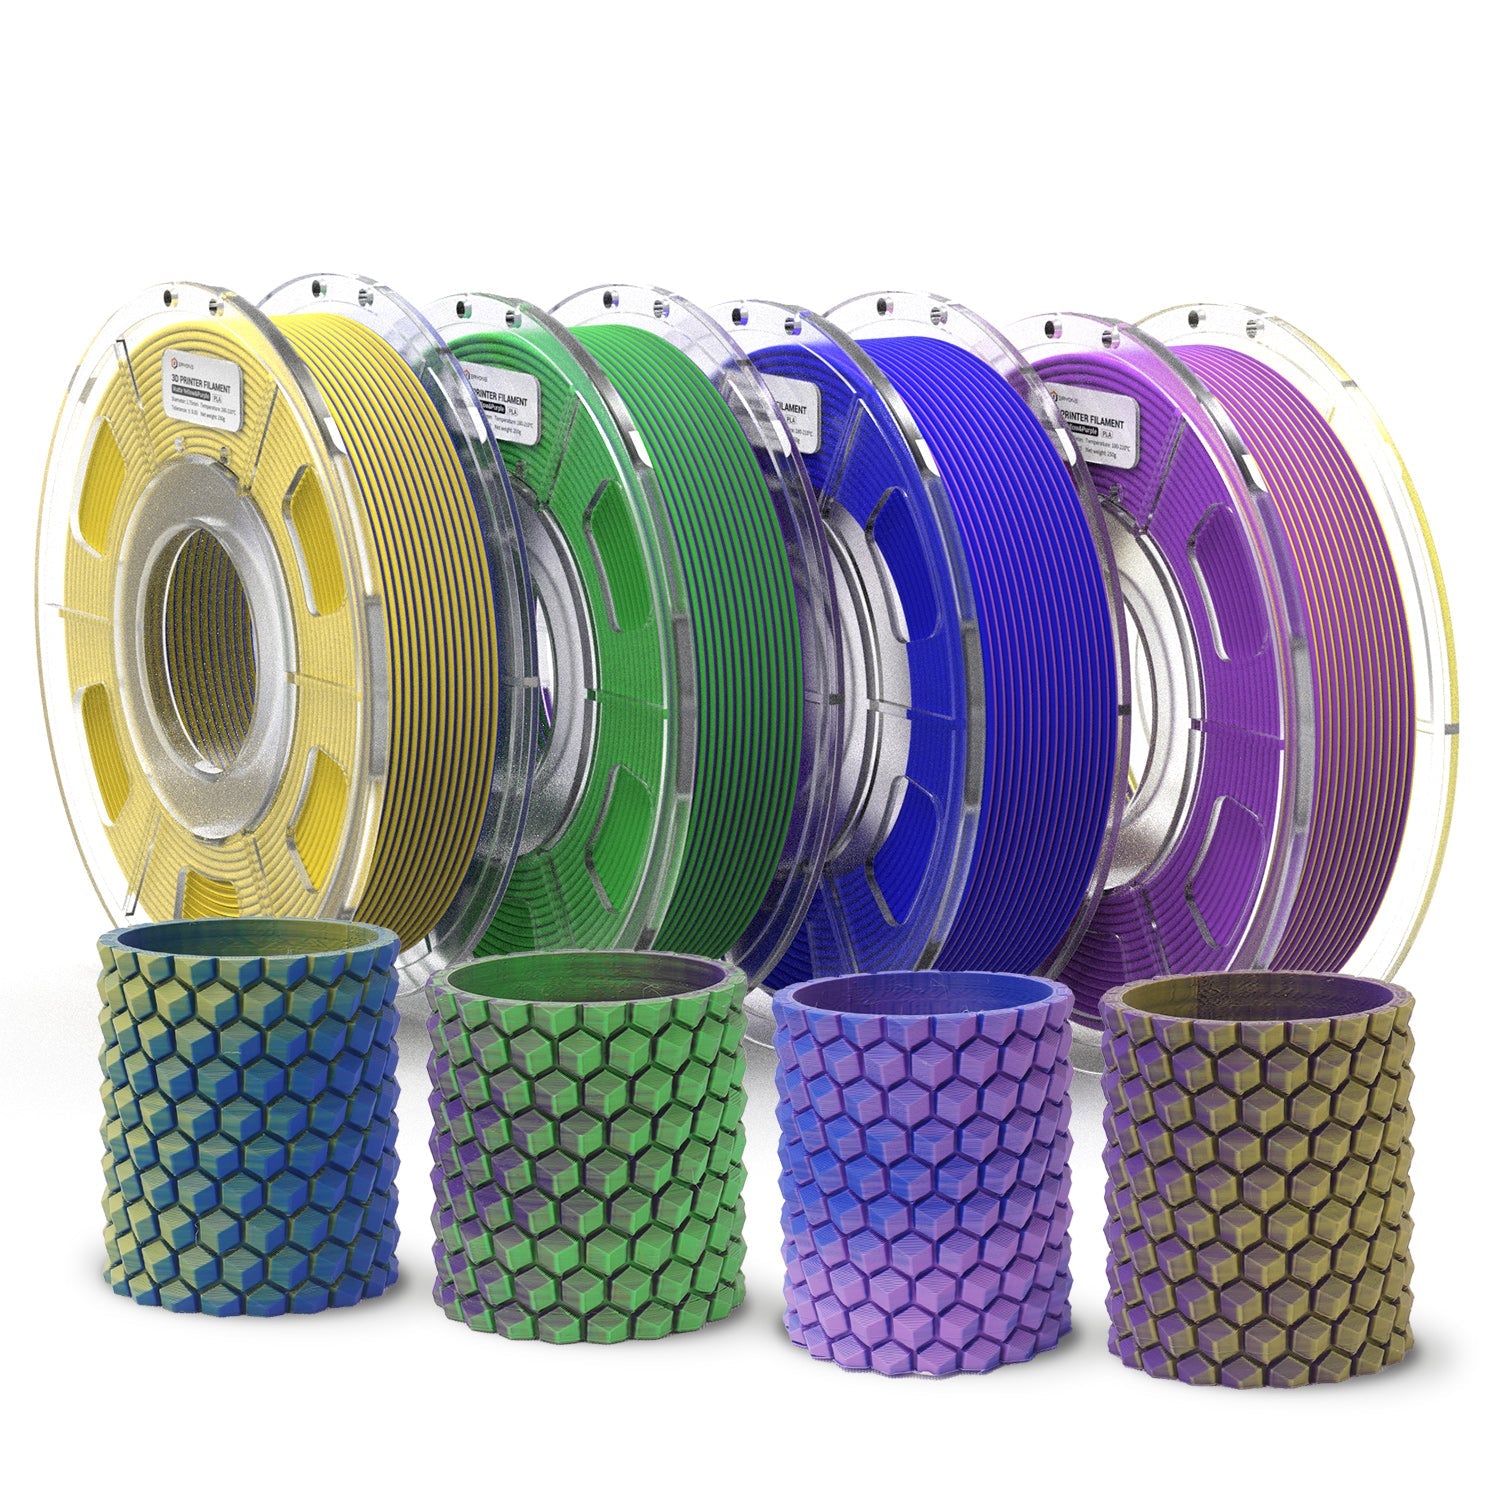 ERYONE 4 ROLLEN/250 g (insgesamt 1 kg/2,2 lbs) 1,75 mm mattes zweifarbiges PLA-Filament, Genauigkeit +/- 0,03 mm (Gelb & Lila; Blau & Gelb; Bule & Lila; Grün & Lila)